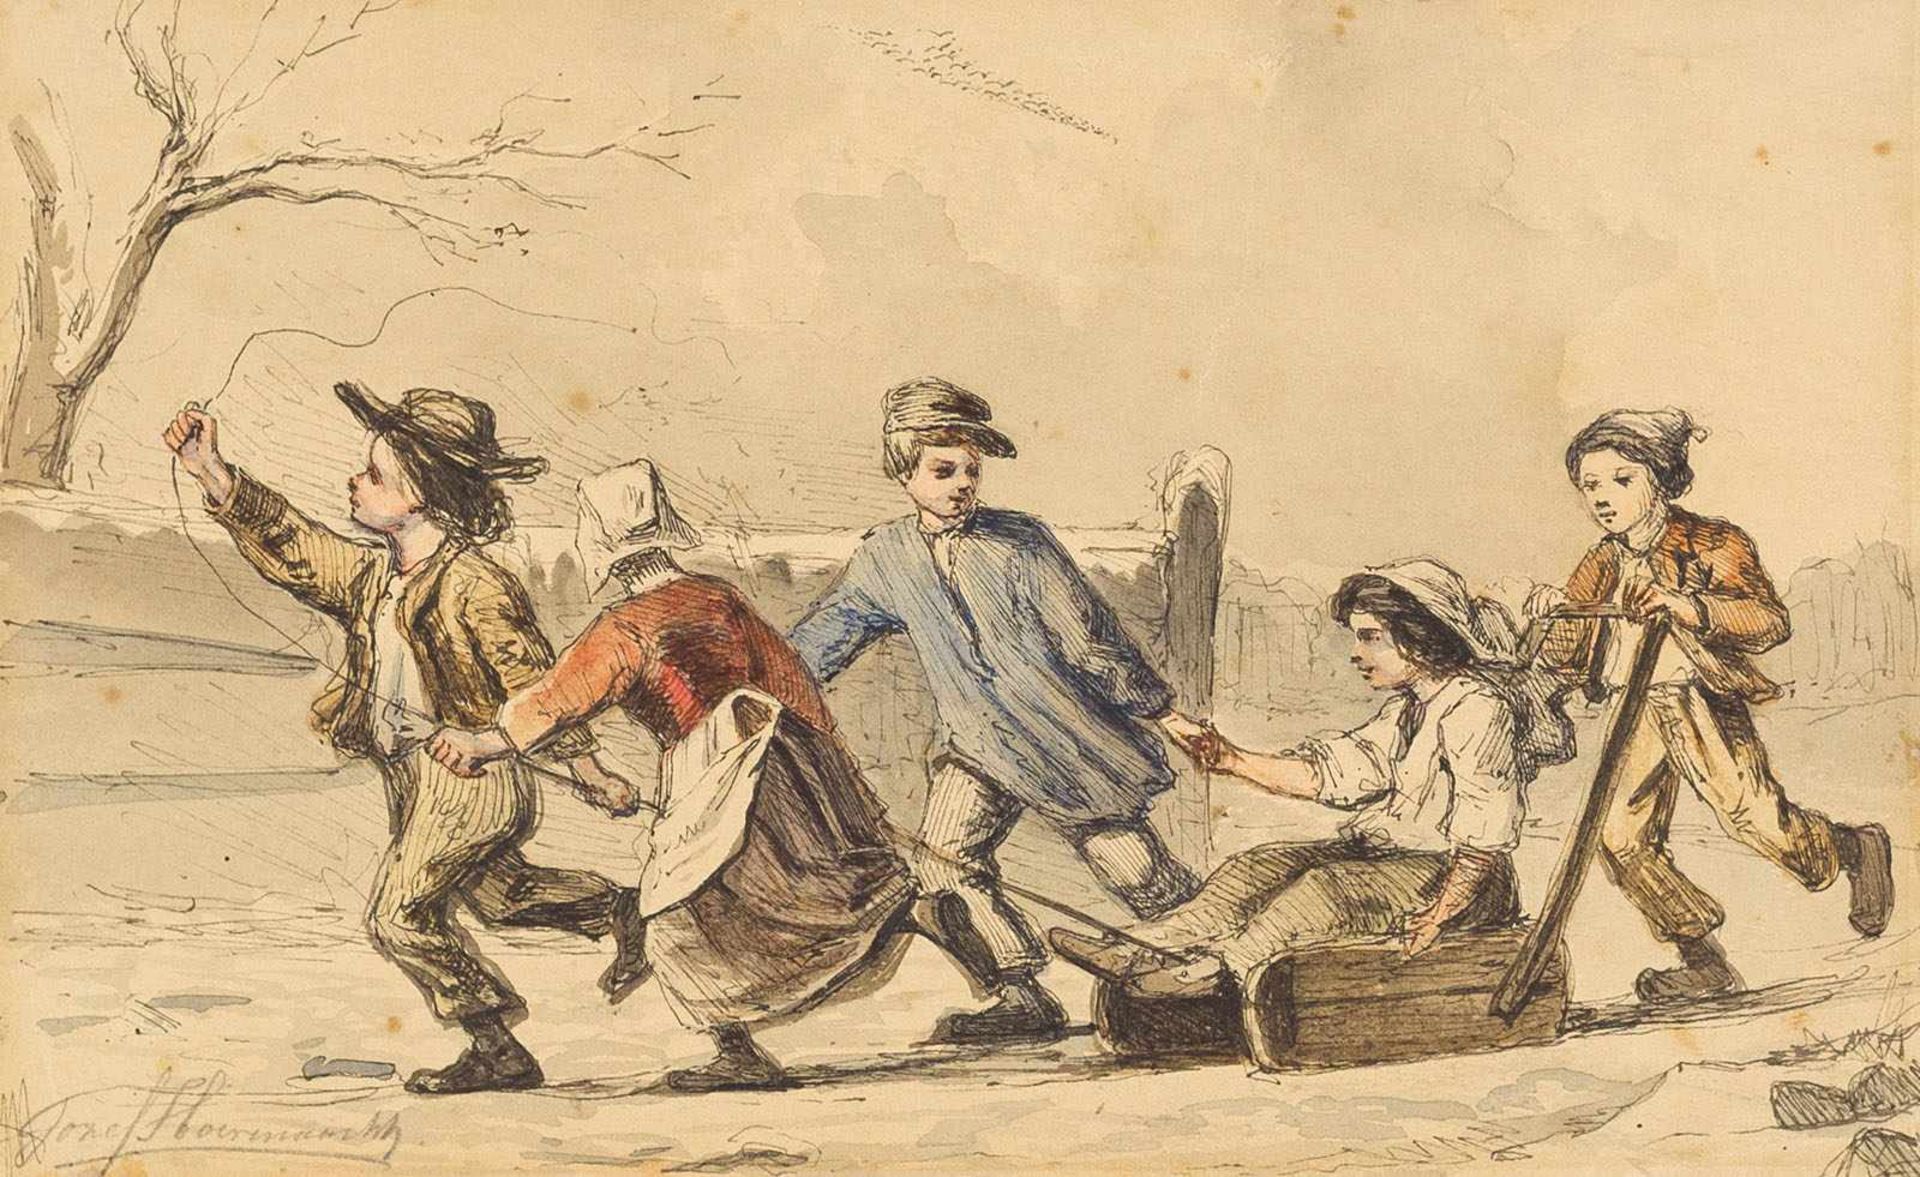 Hörmann, Joseph Ignaz(1775-1820). Wintervergnügen. Zeichnung. Feder, farbige Tuschen, mit